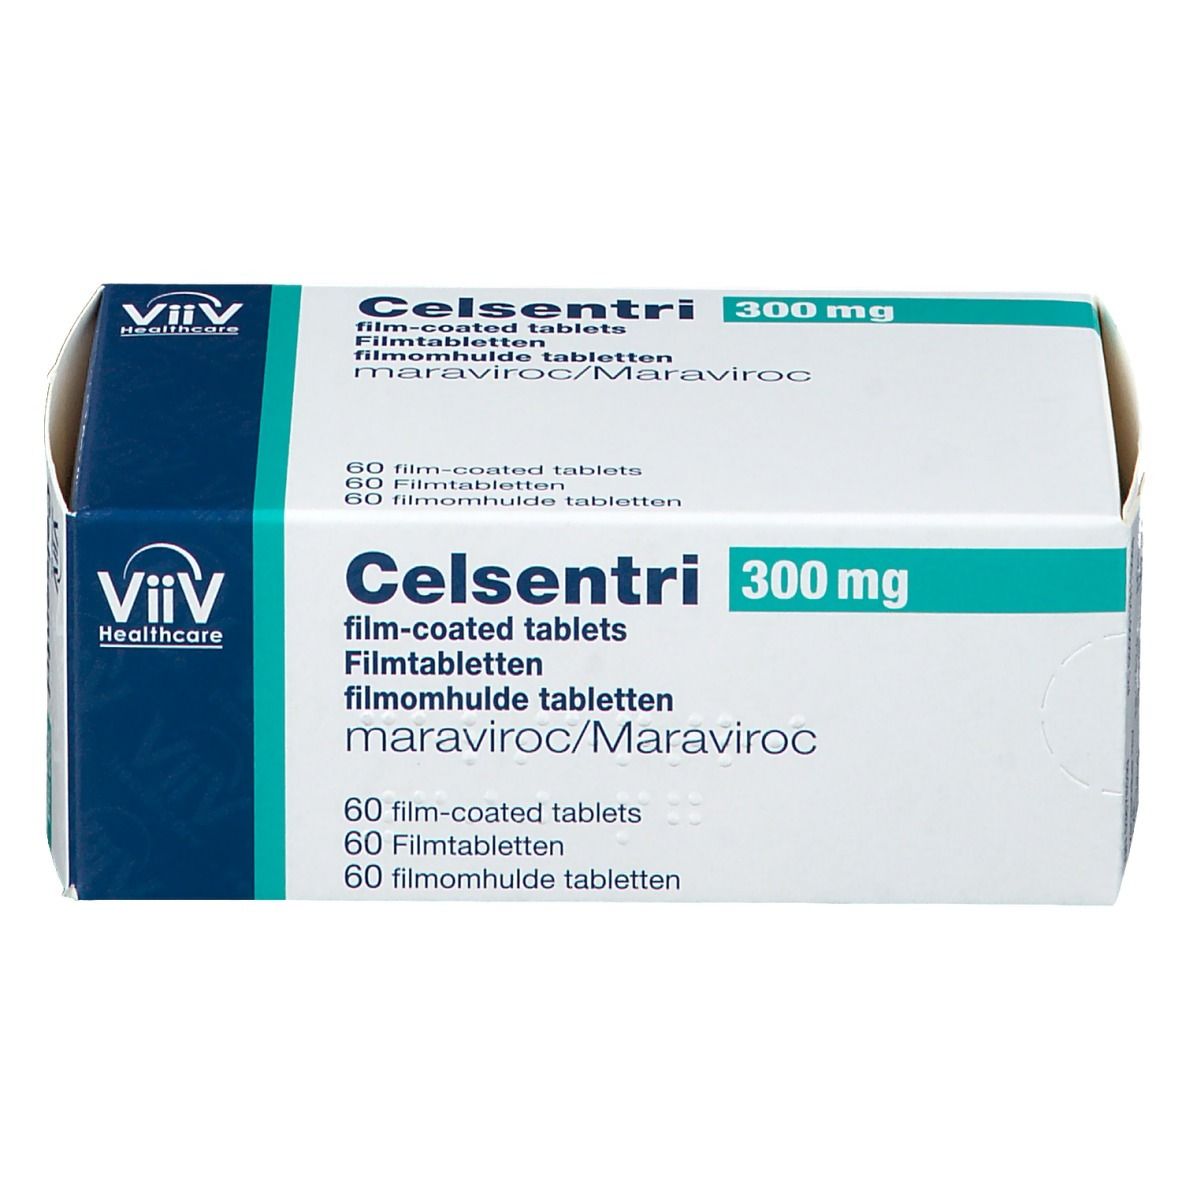 Celsentri 300 mg